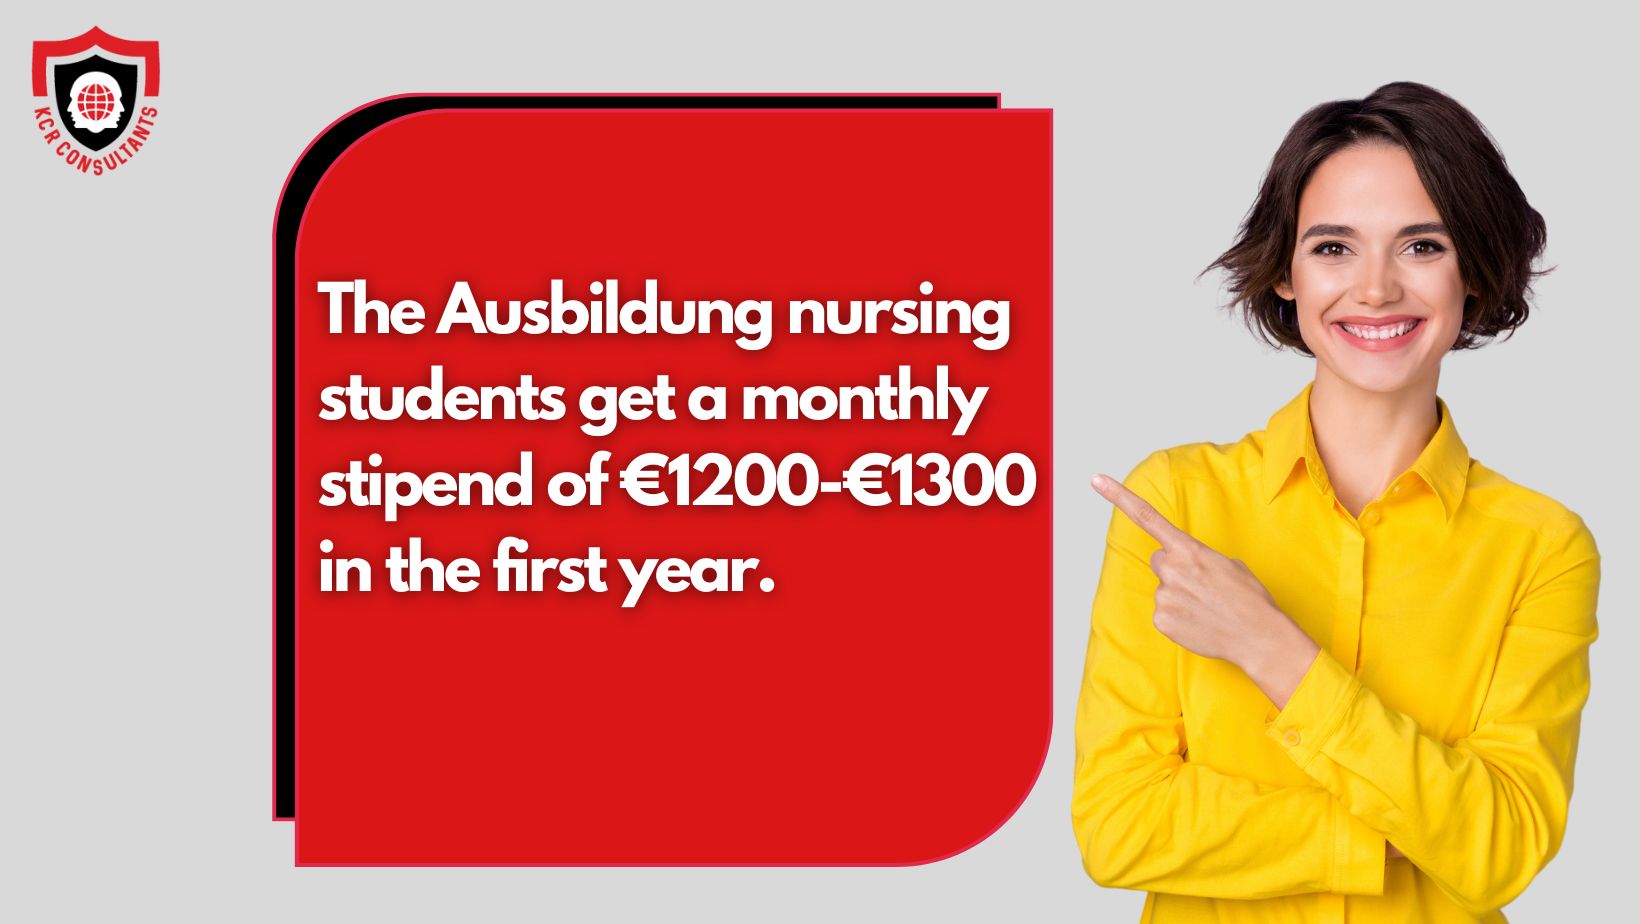 Nursing Ausbildung in Germany